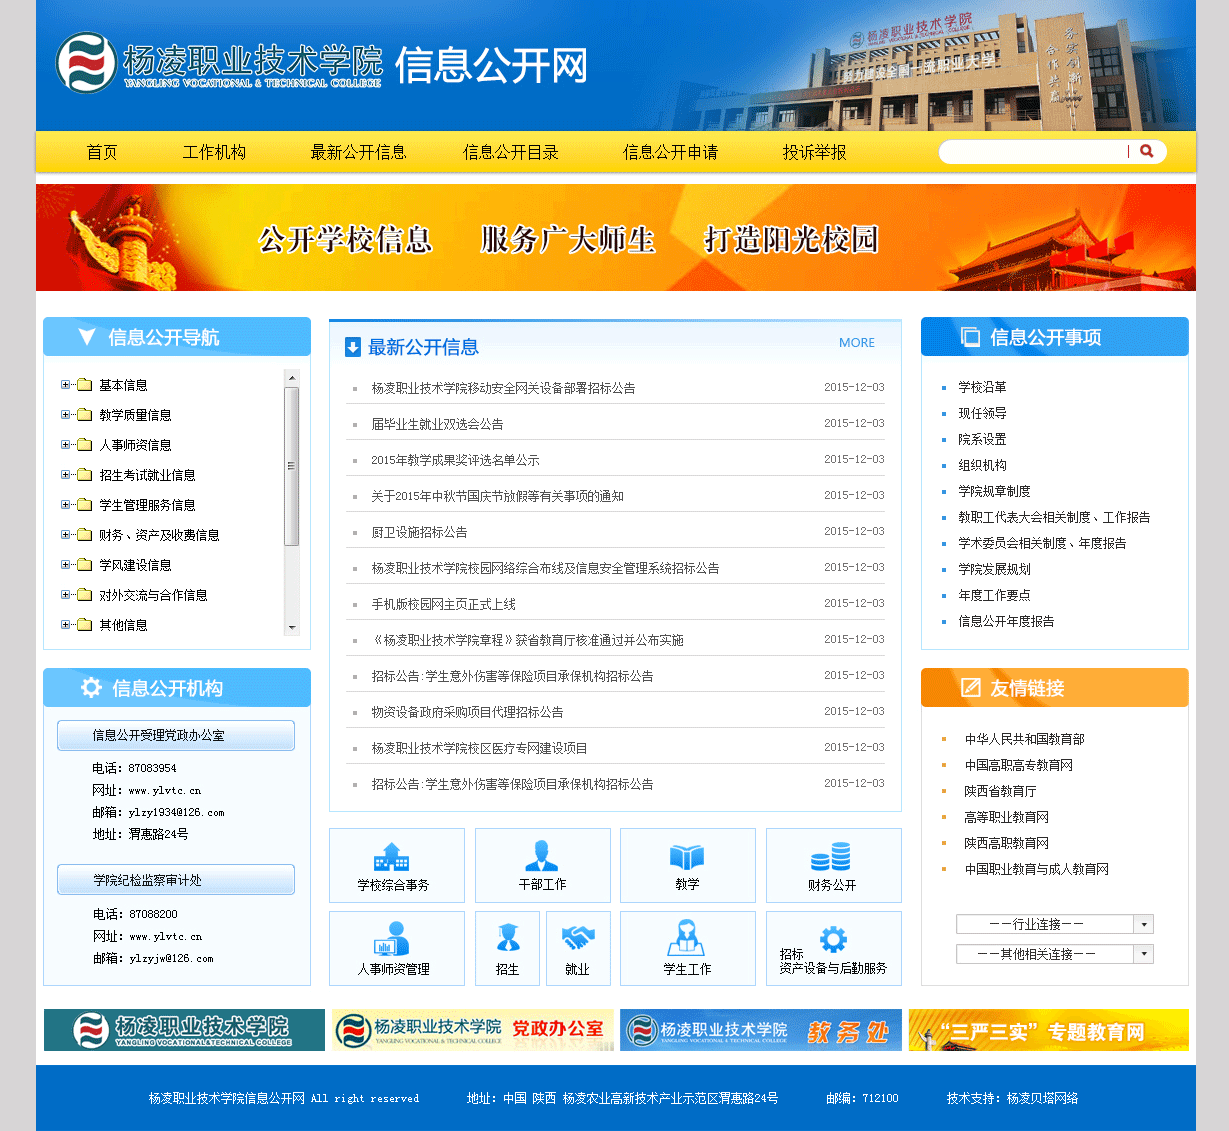 学校11——杨凌职业技术学院信息公开网.png